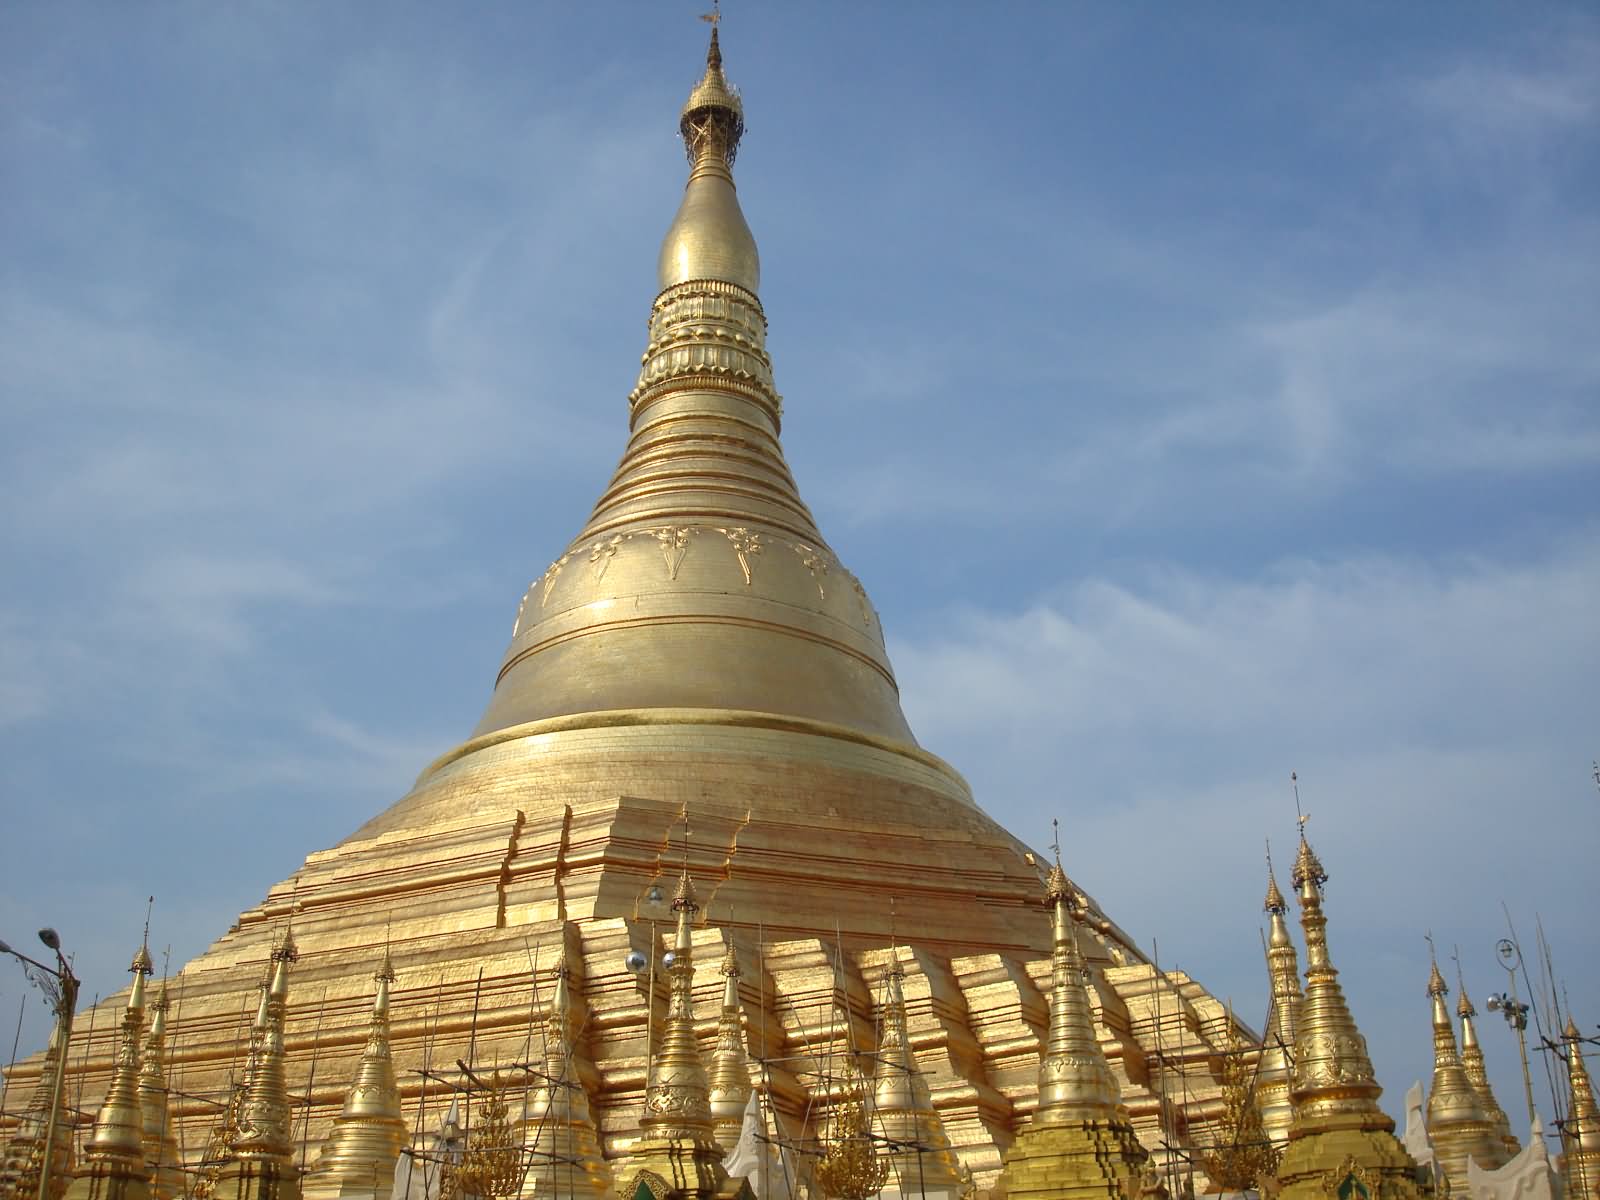 Top Of The Golden Shwedagon Pagoda In Yangon